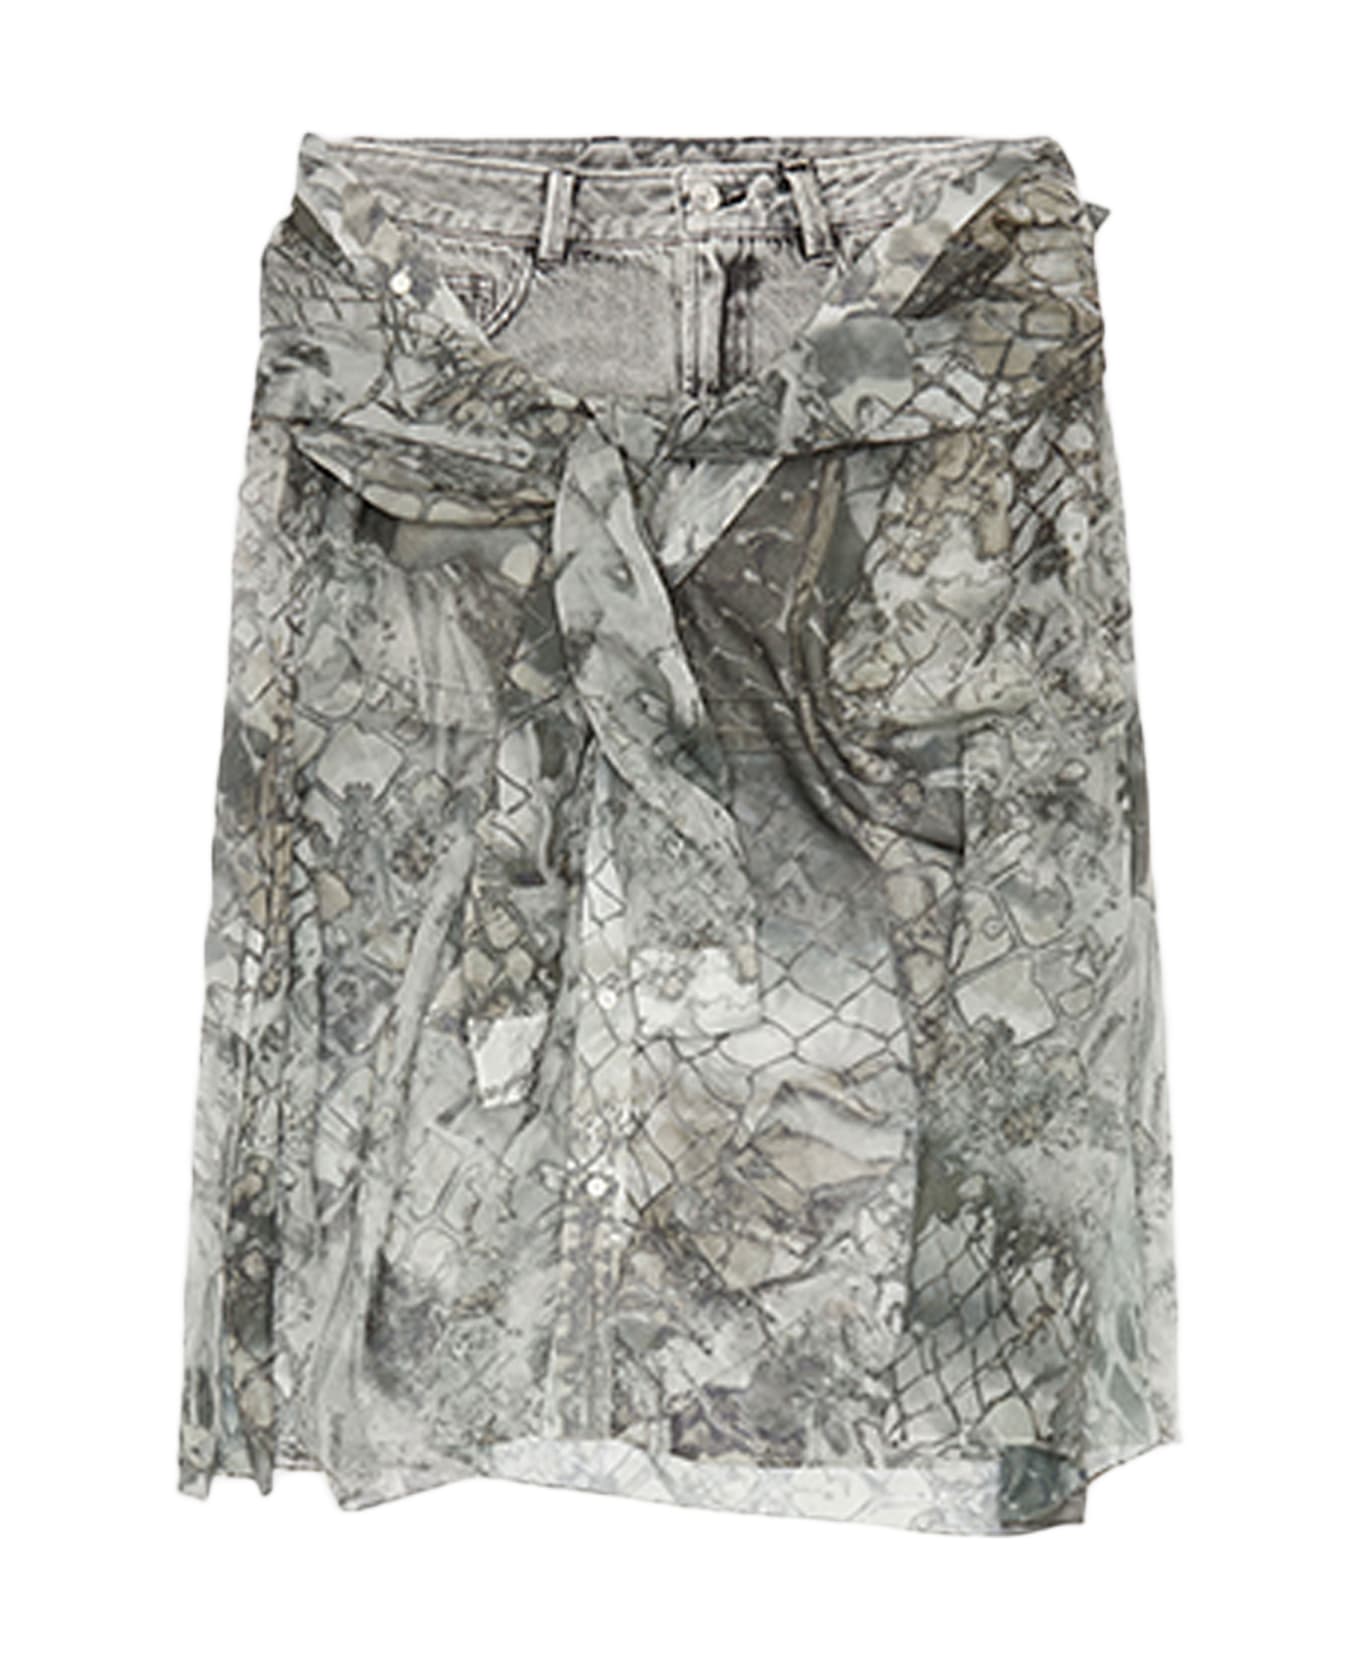 Diesel 0akaso-jeany Light grey denim skirt with knotted chiffon shirt - O Jeany - Denim grigio